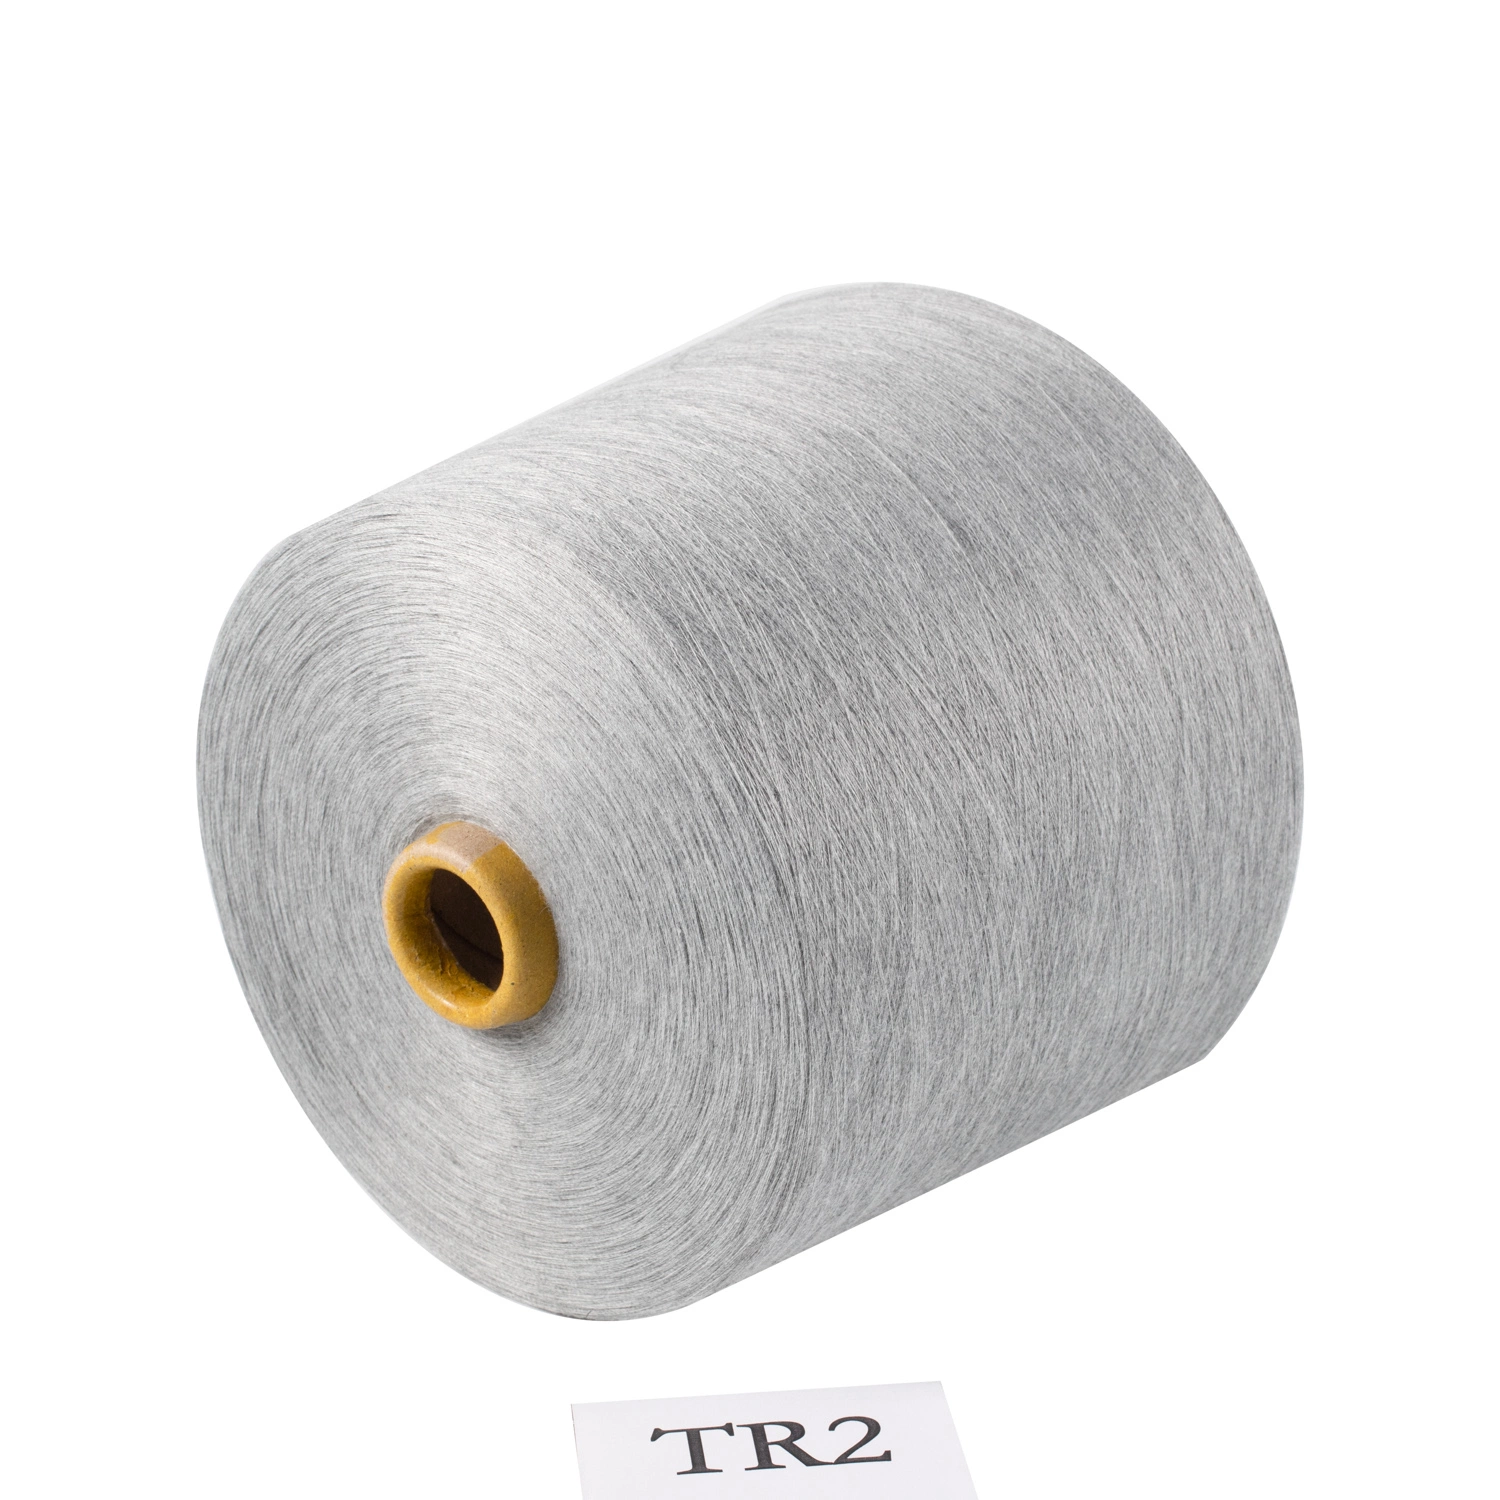 Xk Chine recycler de haute qualité facile à basse température Ecdp cationiques filés de polyester